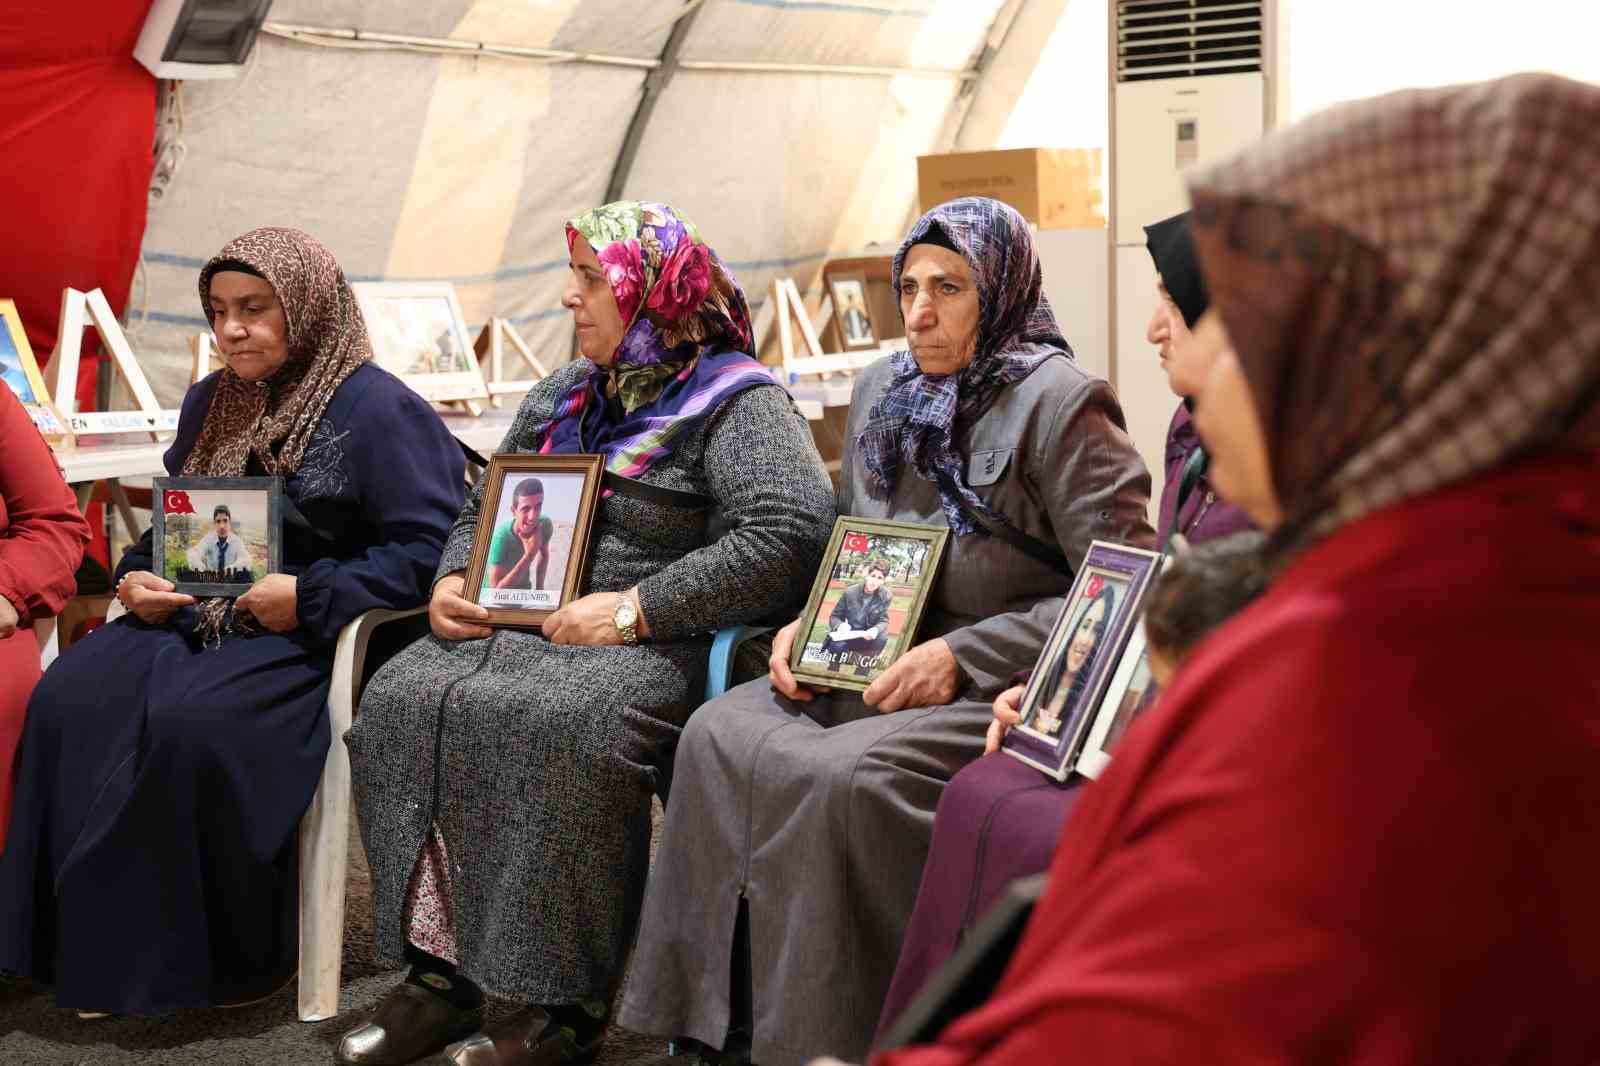 Evlat nöbetindeki anne: “İsrail’in Gazze’ye yaptığı zulmü 40 yıldır HDP ve PKK bize yapıyor”